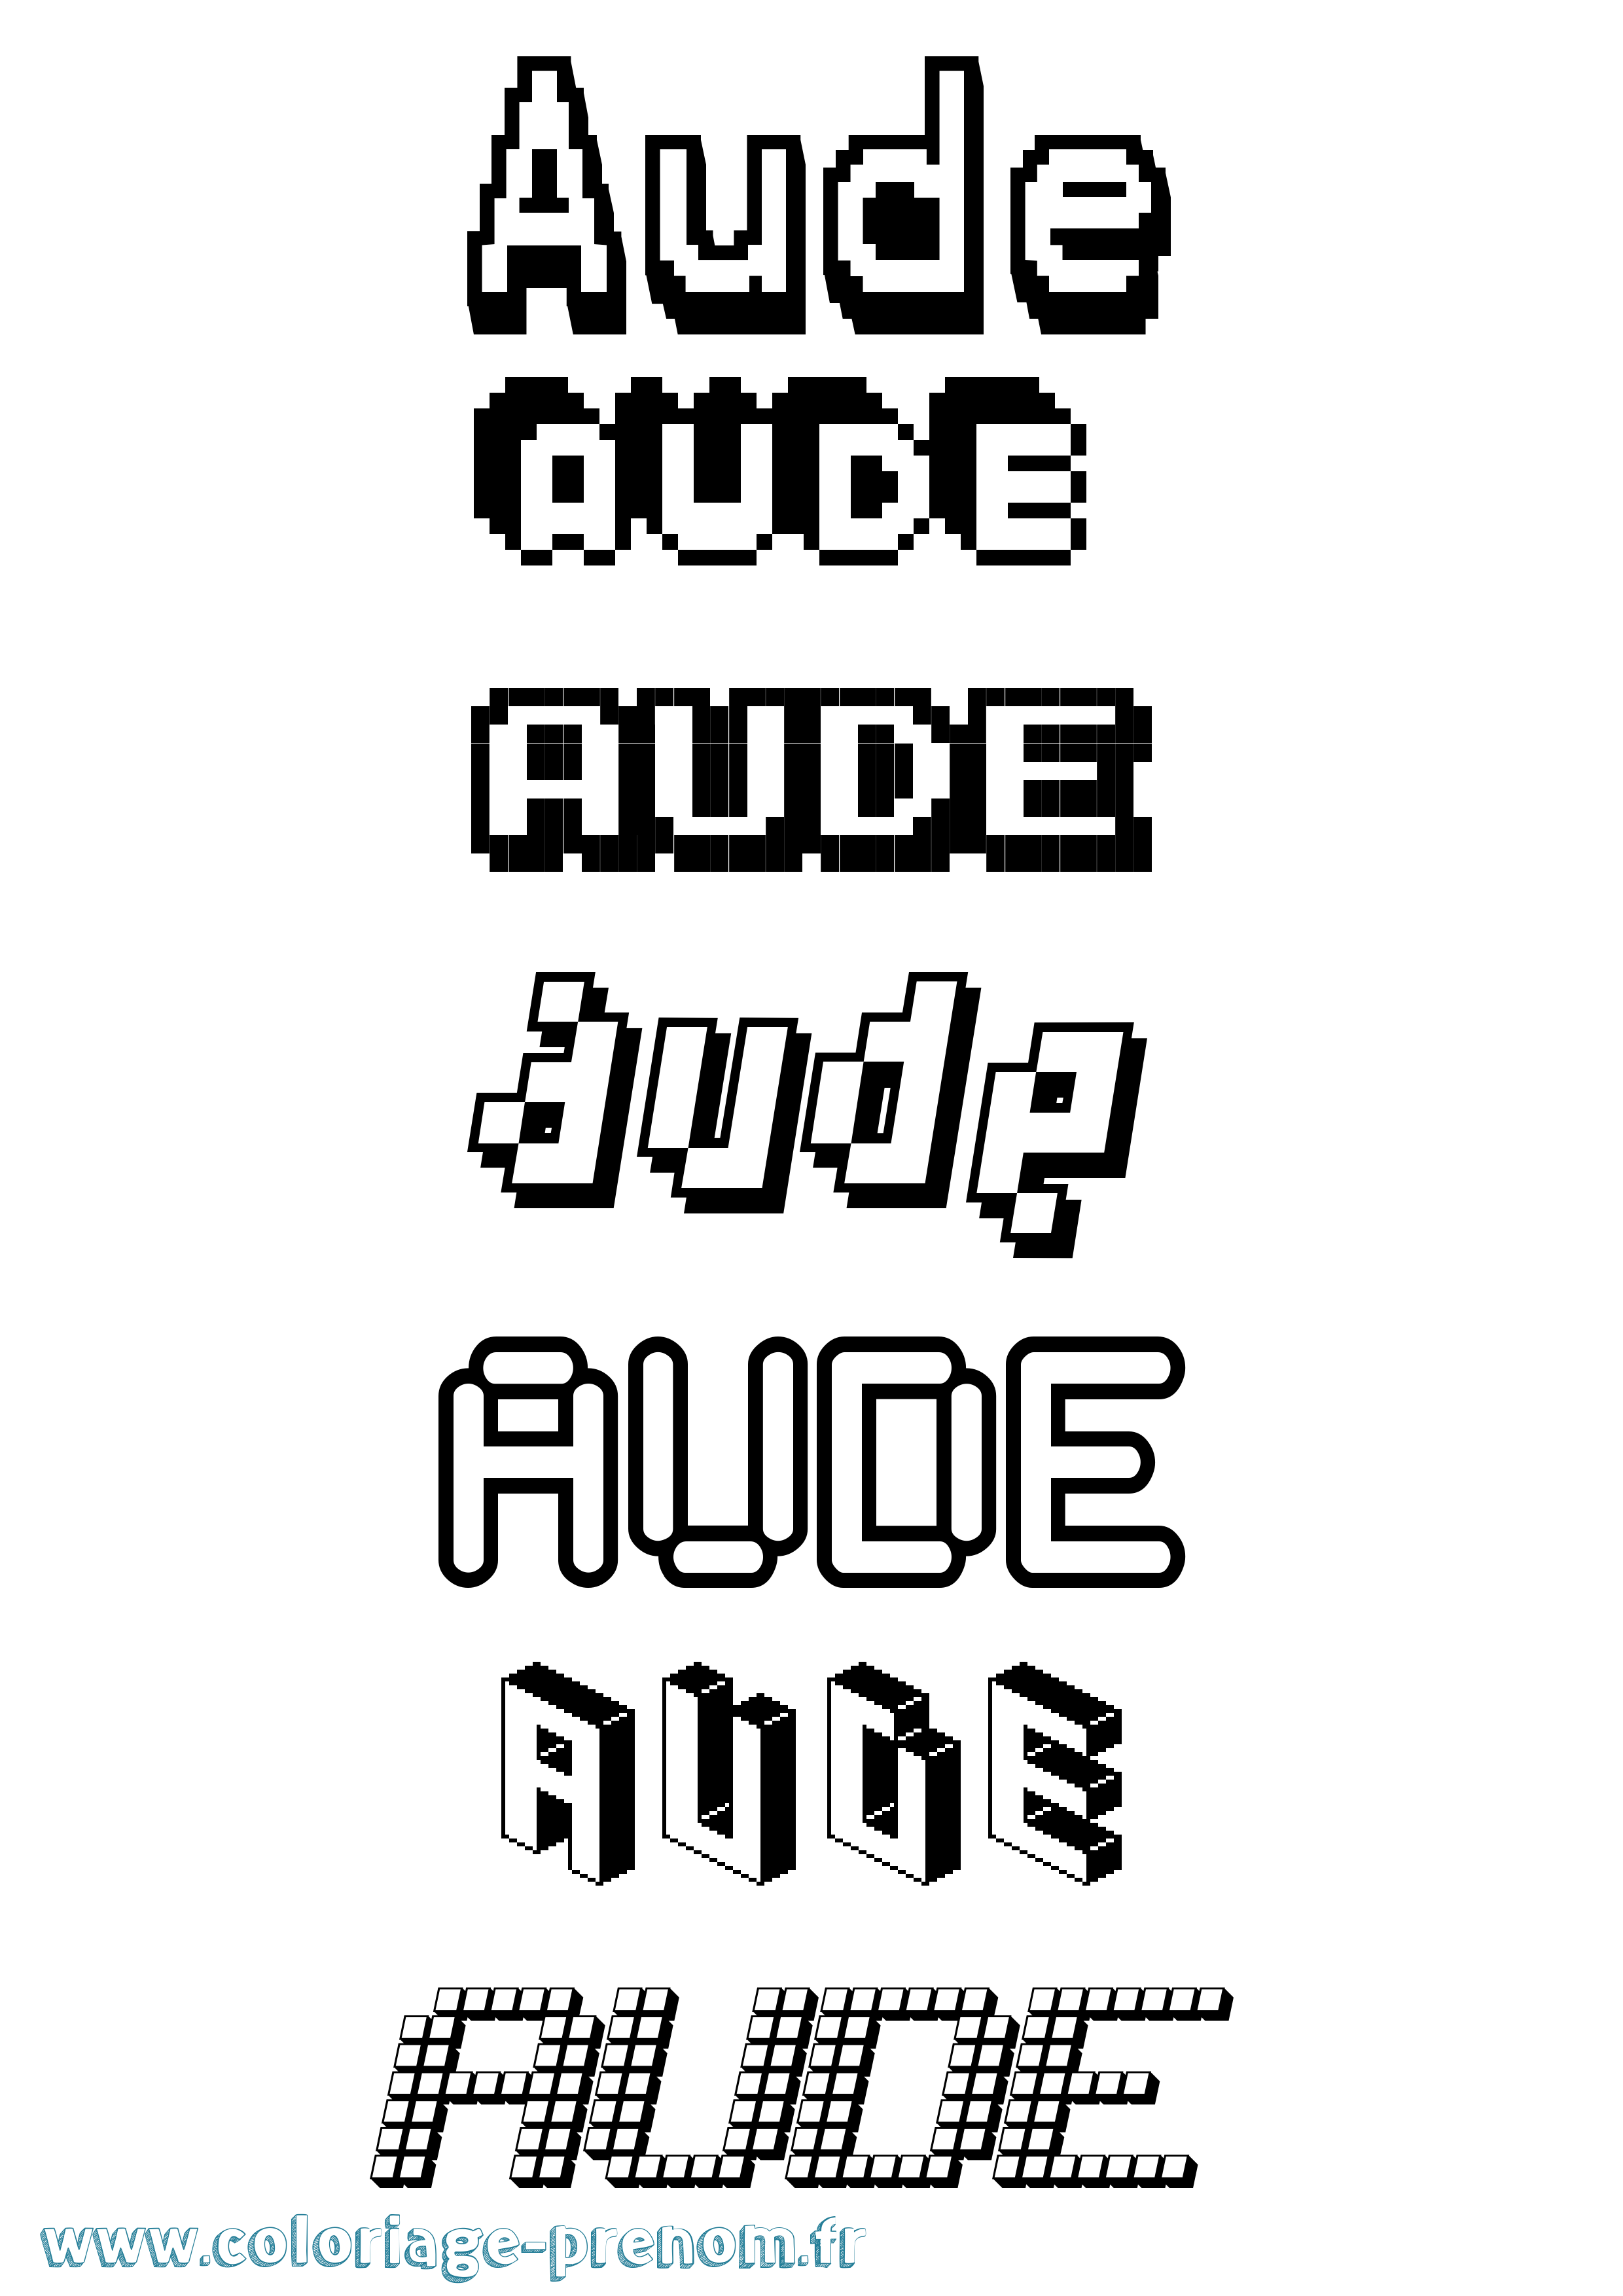 Coloriage prénom Aude